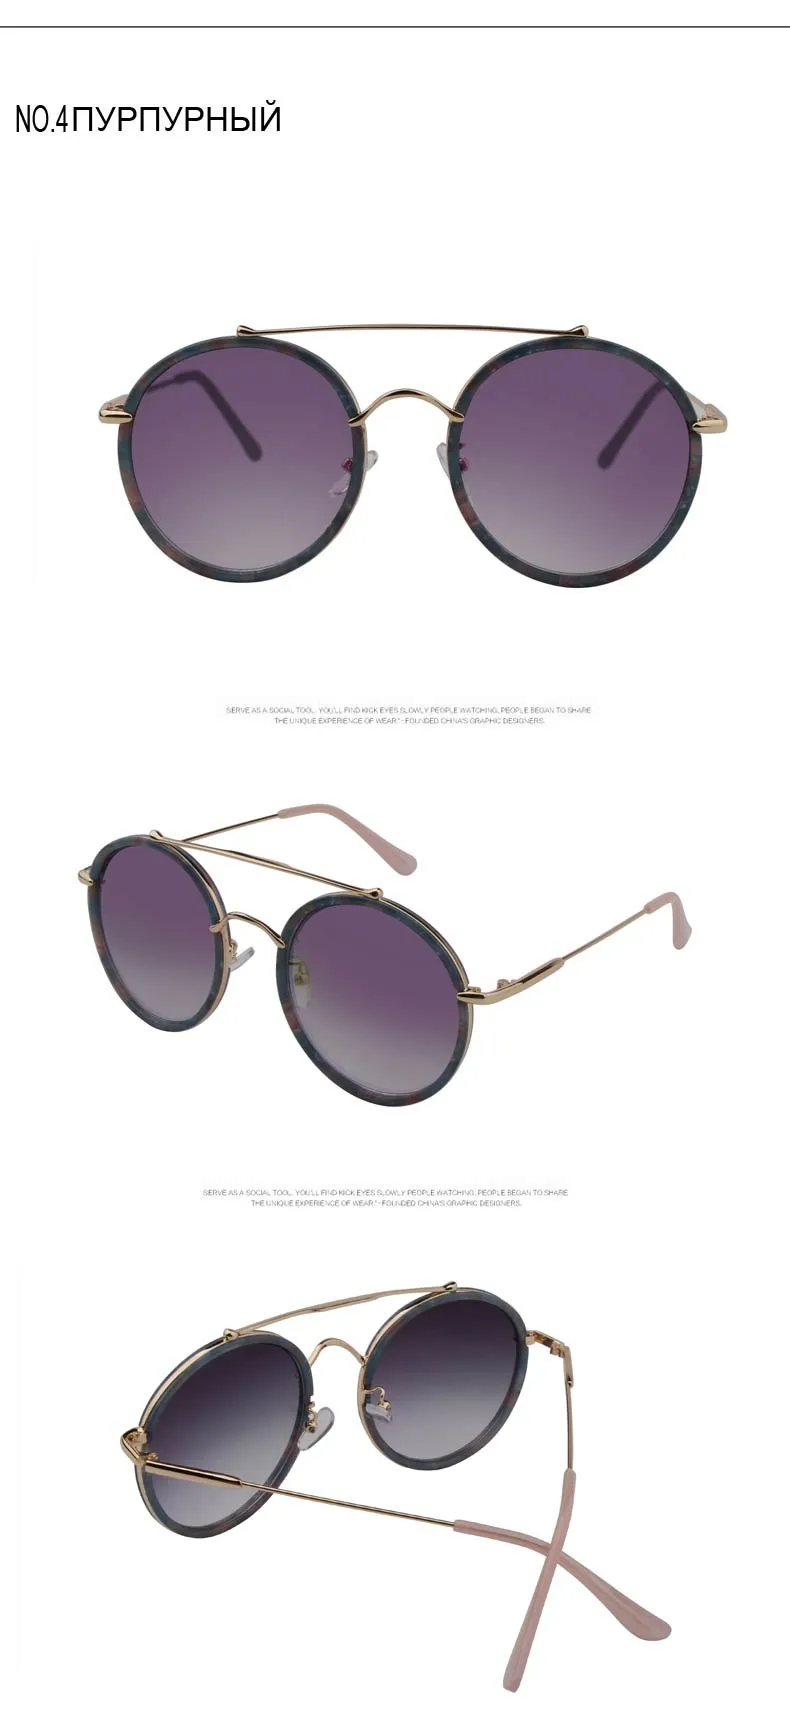 New Моде Ретро Круглые Очки Женщины Luxury Brand Дизайнер Мужчины Покрытие Зеркало Солнцезащитные Очки для Женщин Высокого Качества Очки